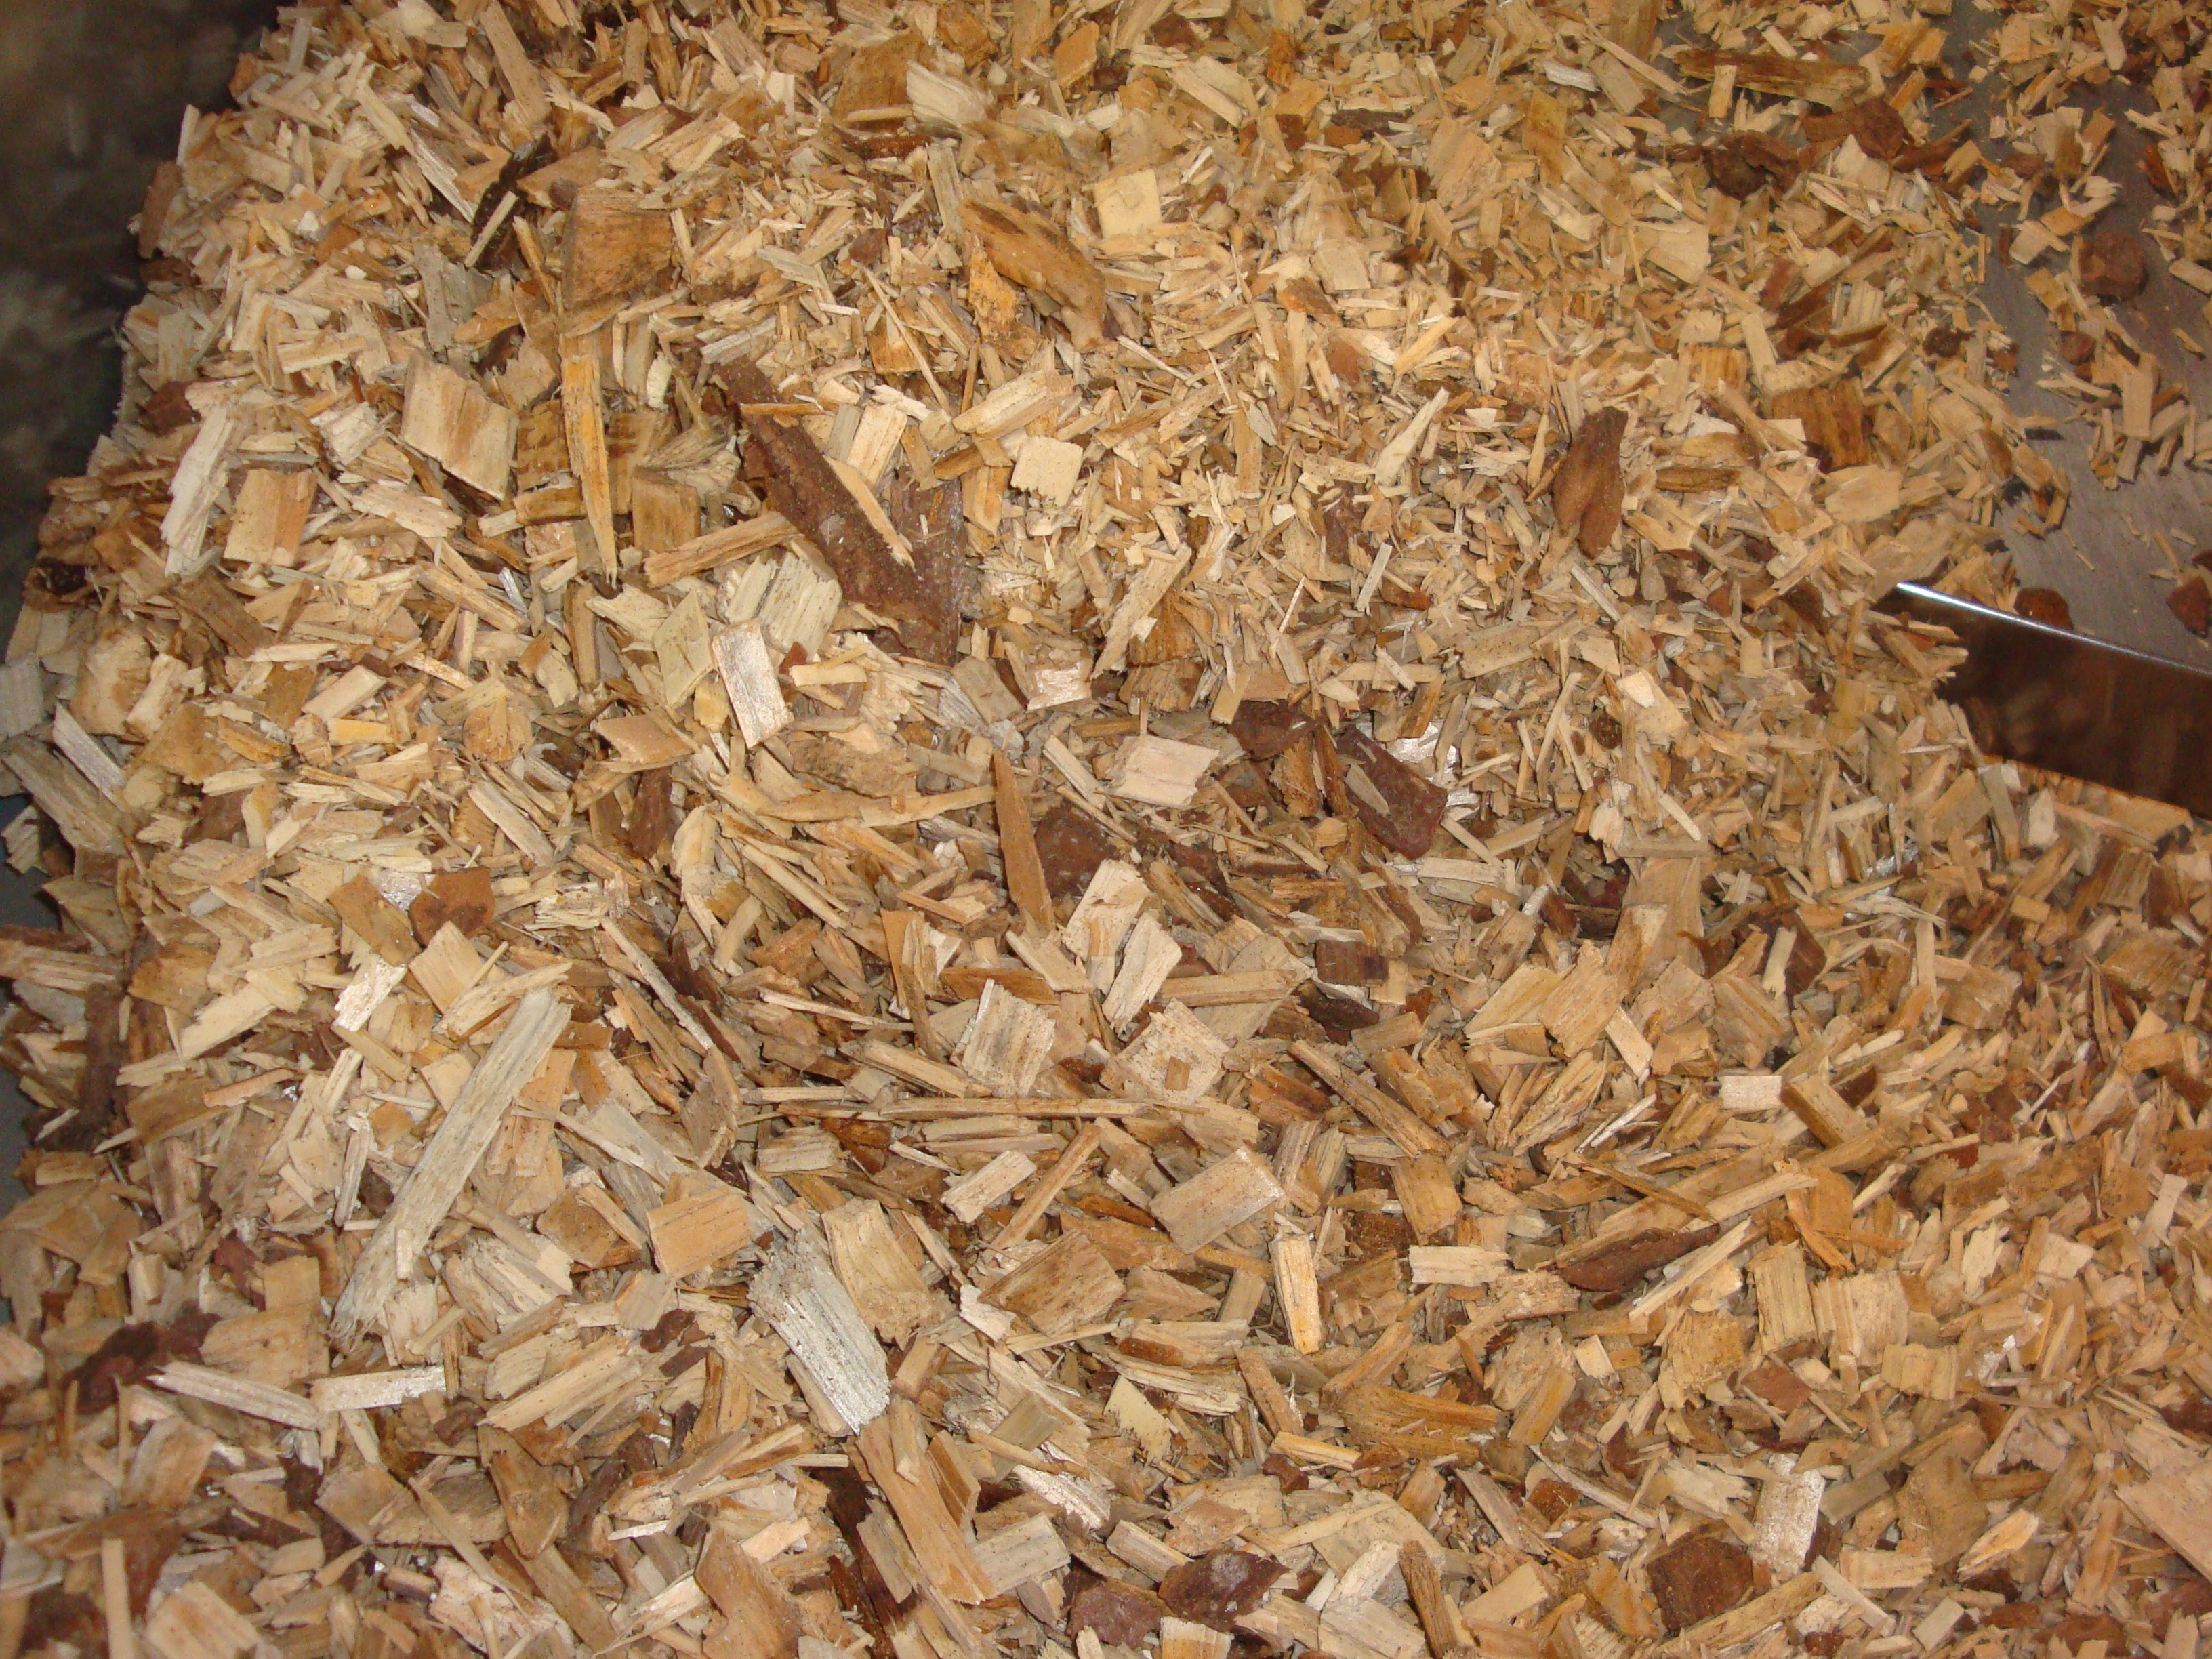 Typische Waldhackgut-Praxisprobe, die aus Rückständen der Waldbewirtschaftung und im Wesentlichen aus Weichholz erzeugt wurden.